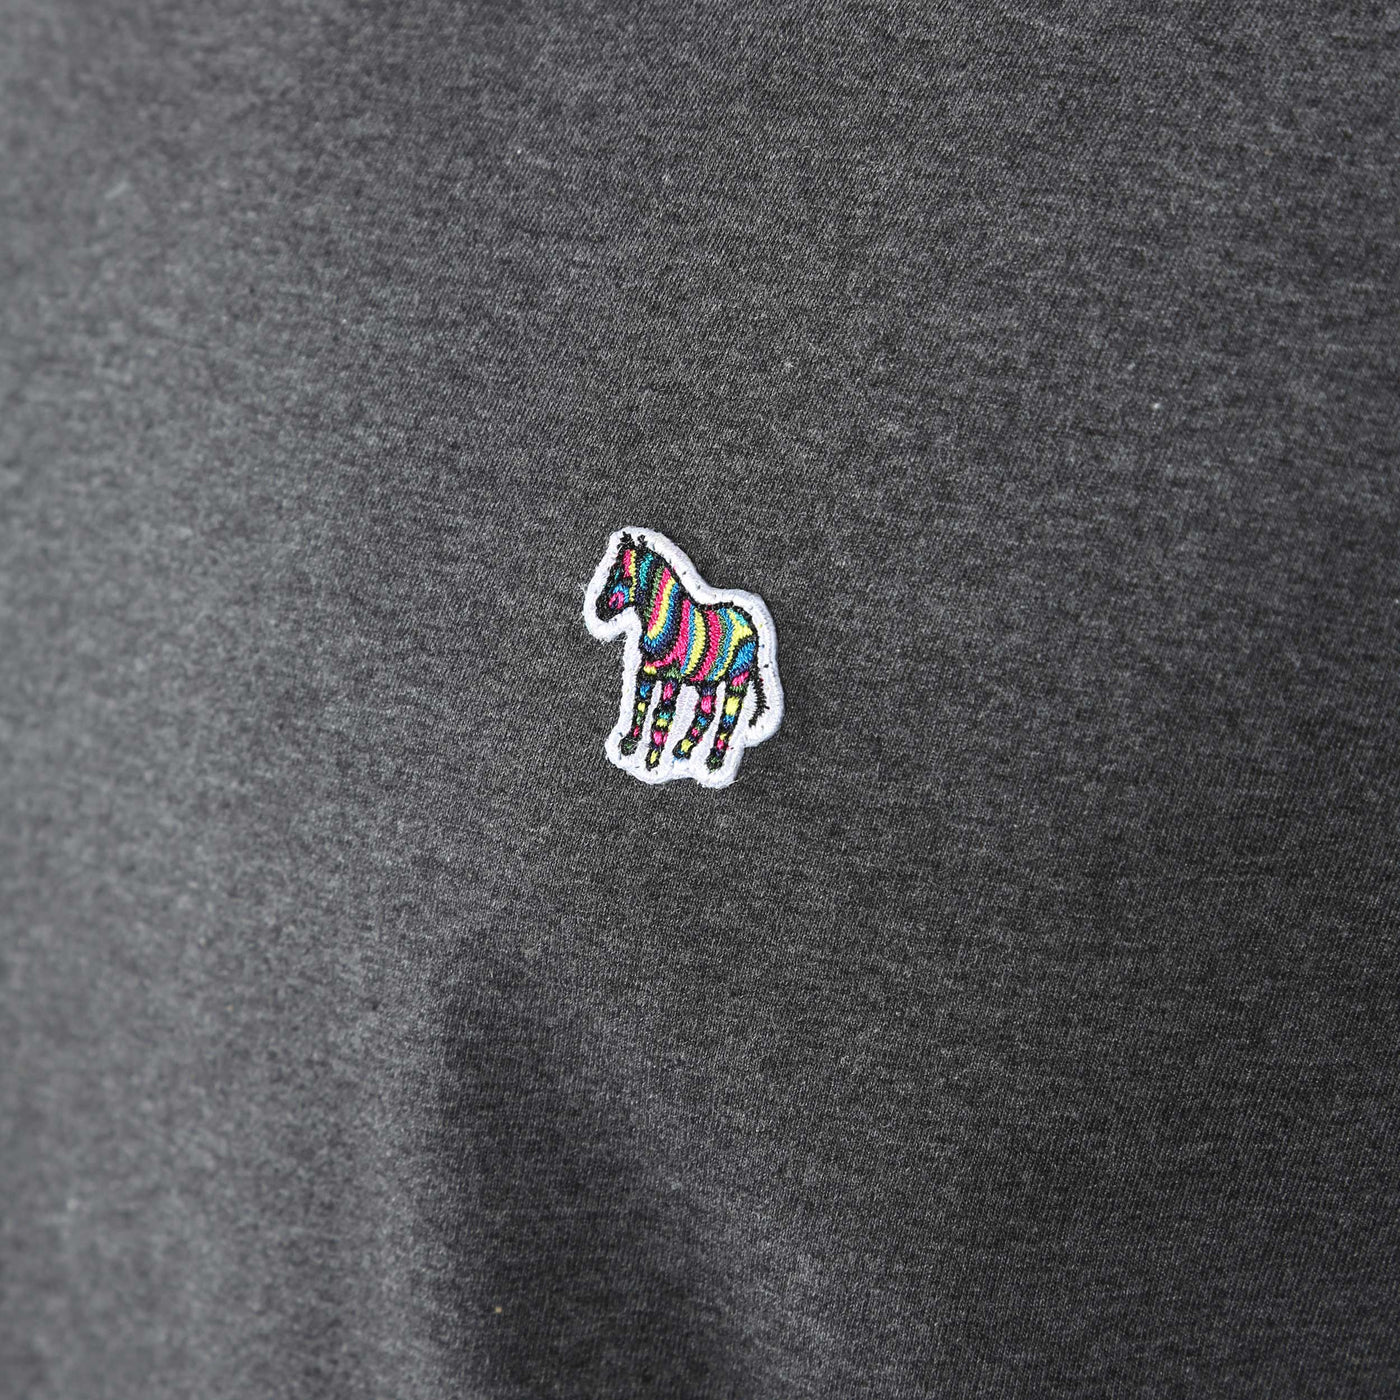 Paul Smith Zebra Badge T Shirt in Black Melange Logo